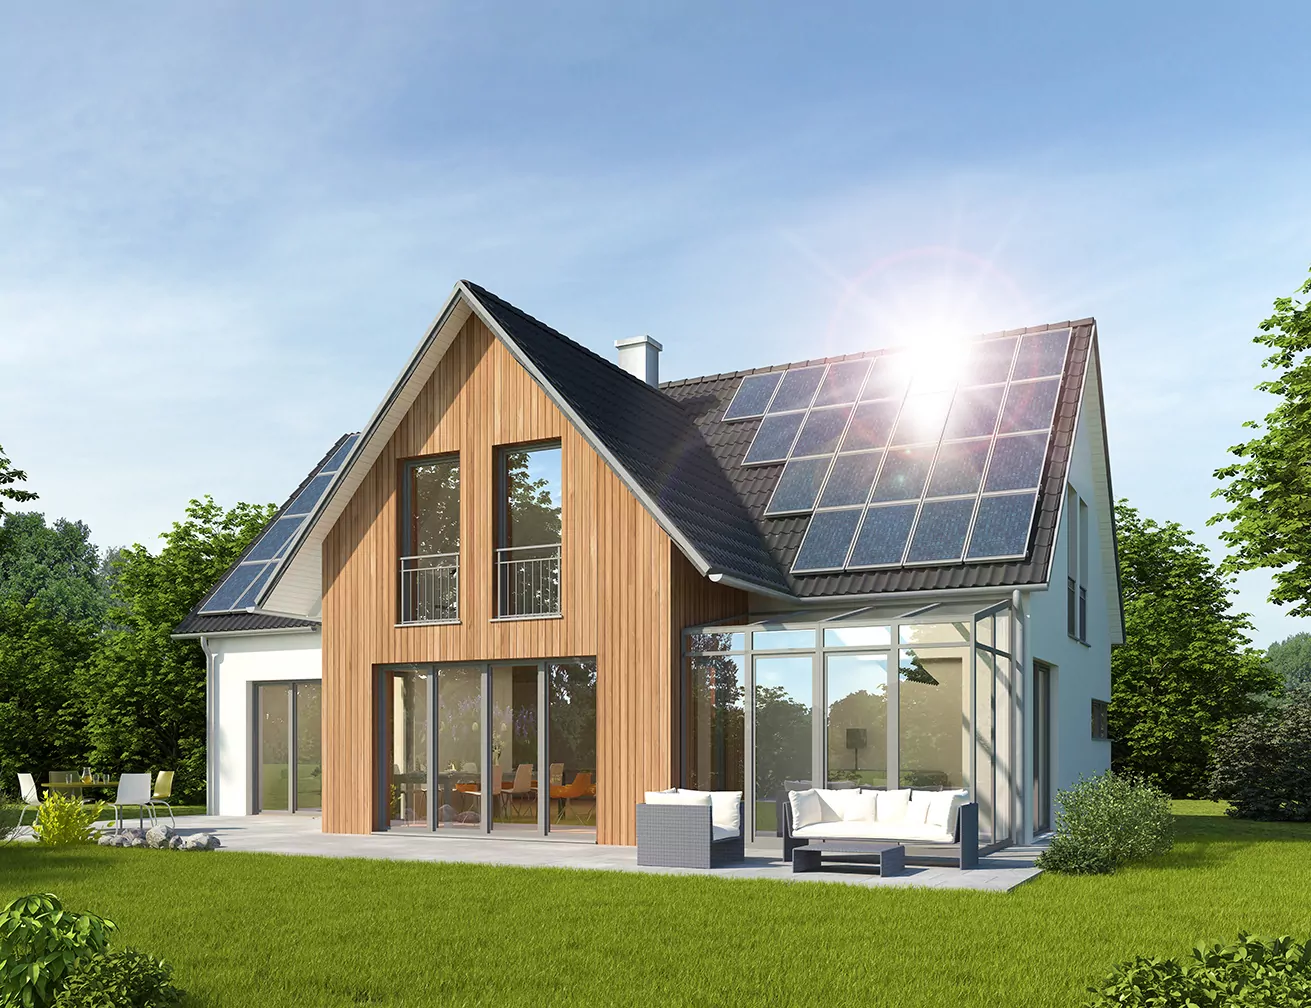 Wie viel Photovoltaik benötigt man für ein Einfamilienhaus?